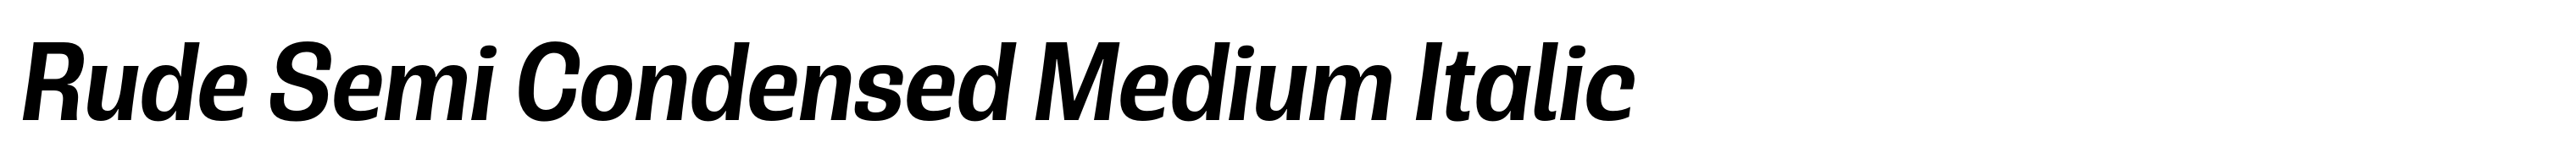 Rude Semi Condensed Medium Italic